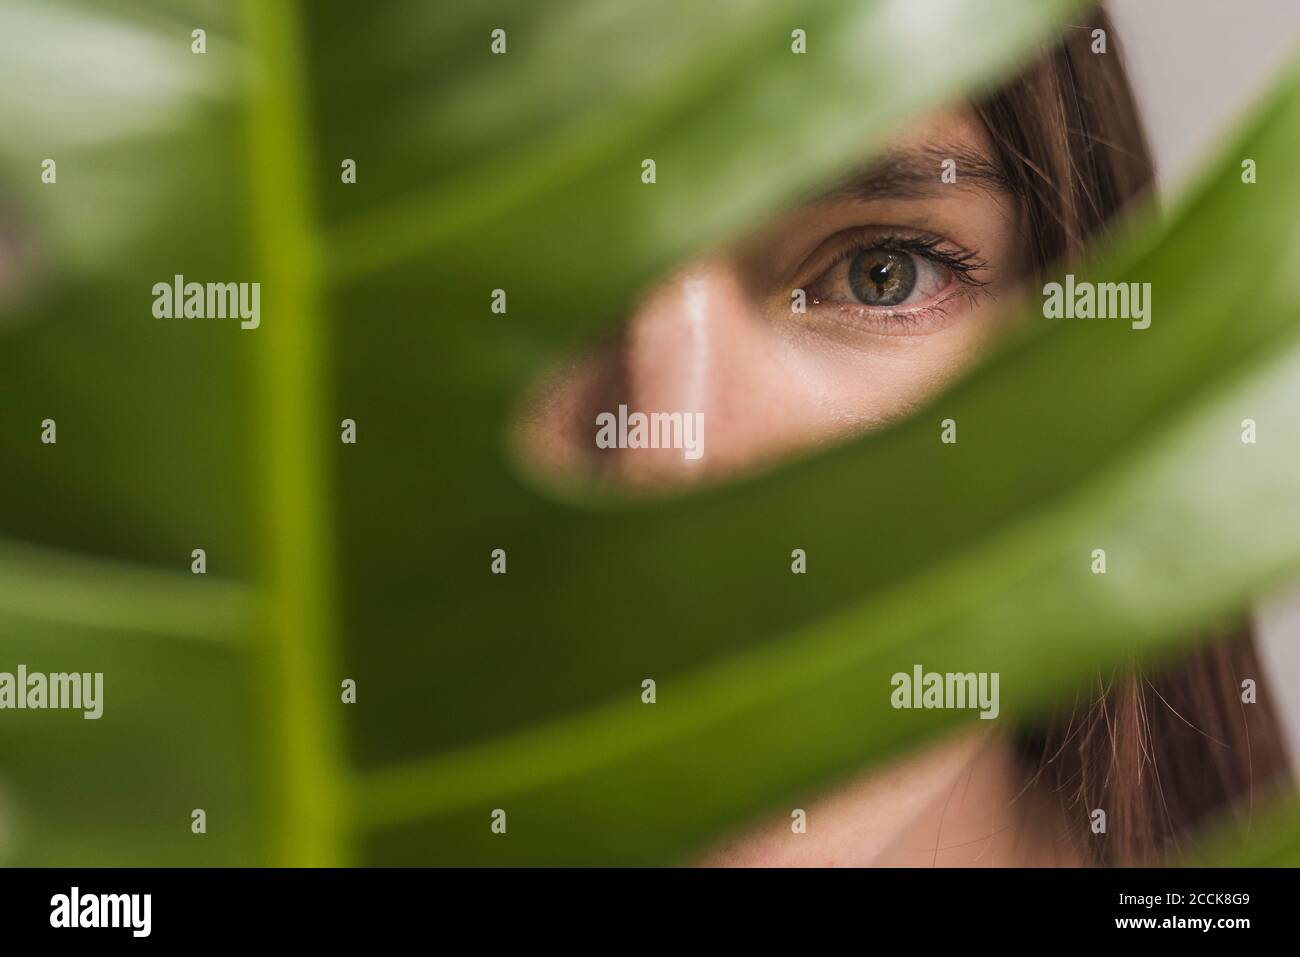 Gros plan d'une femme avec un œil gris regardant à travers la plante Banque D'Images